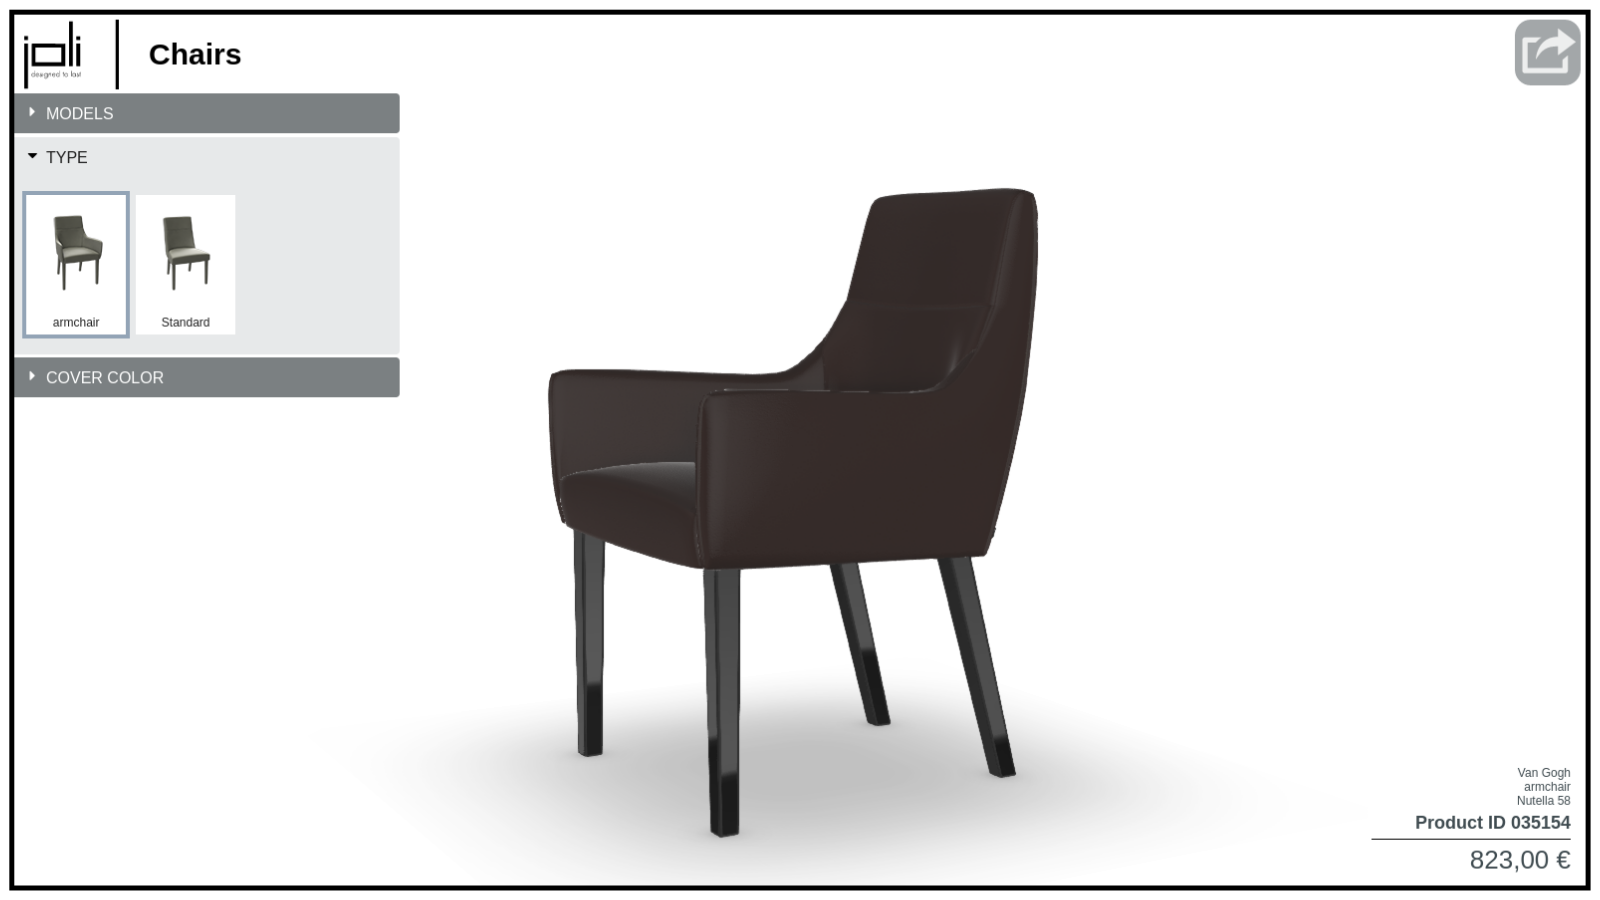 Joli Furniture Configurator preview 